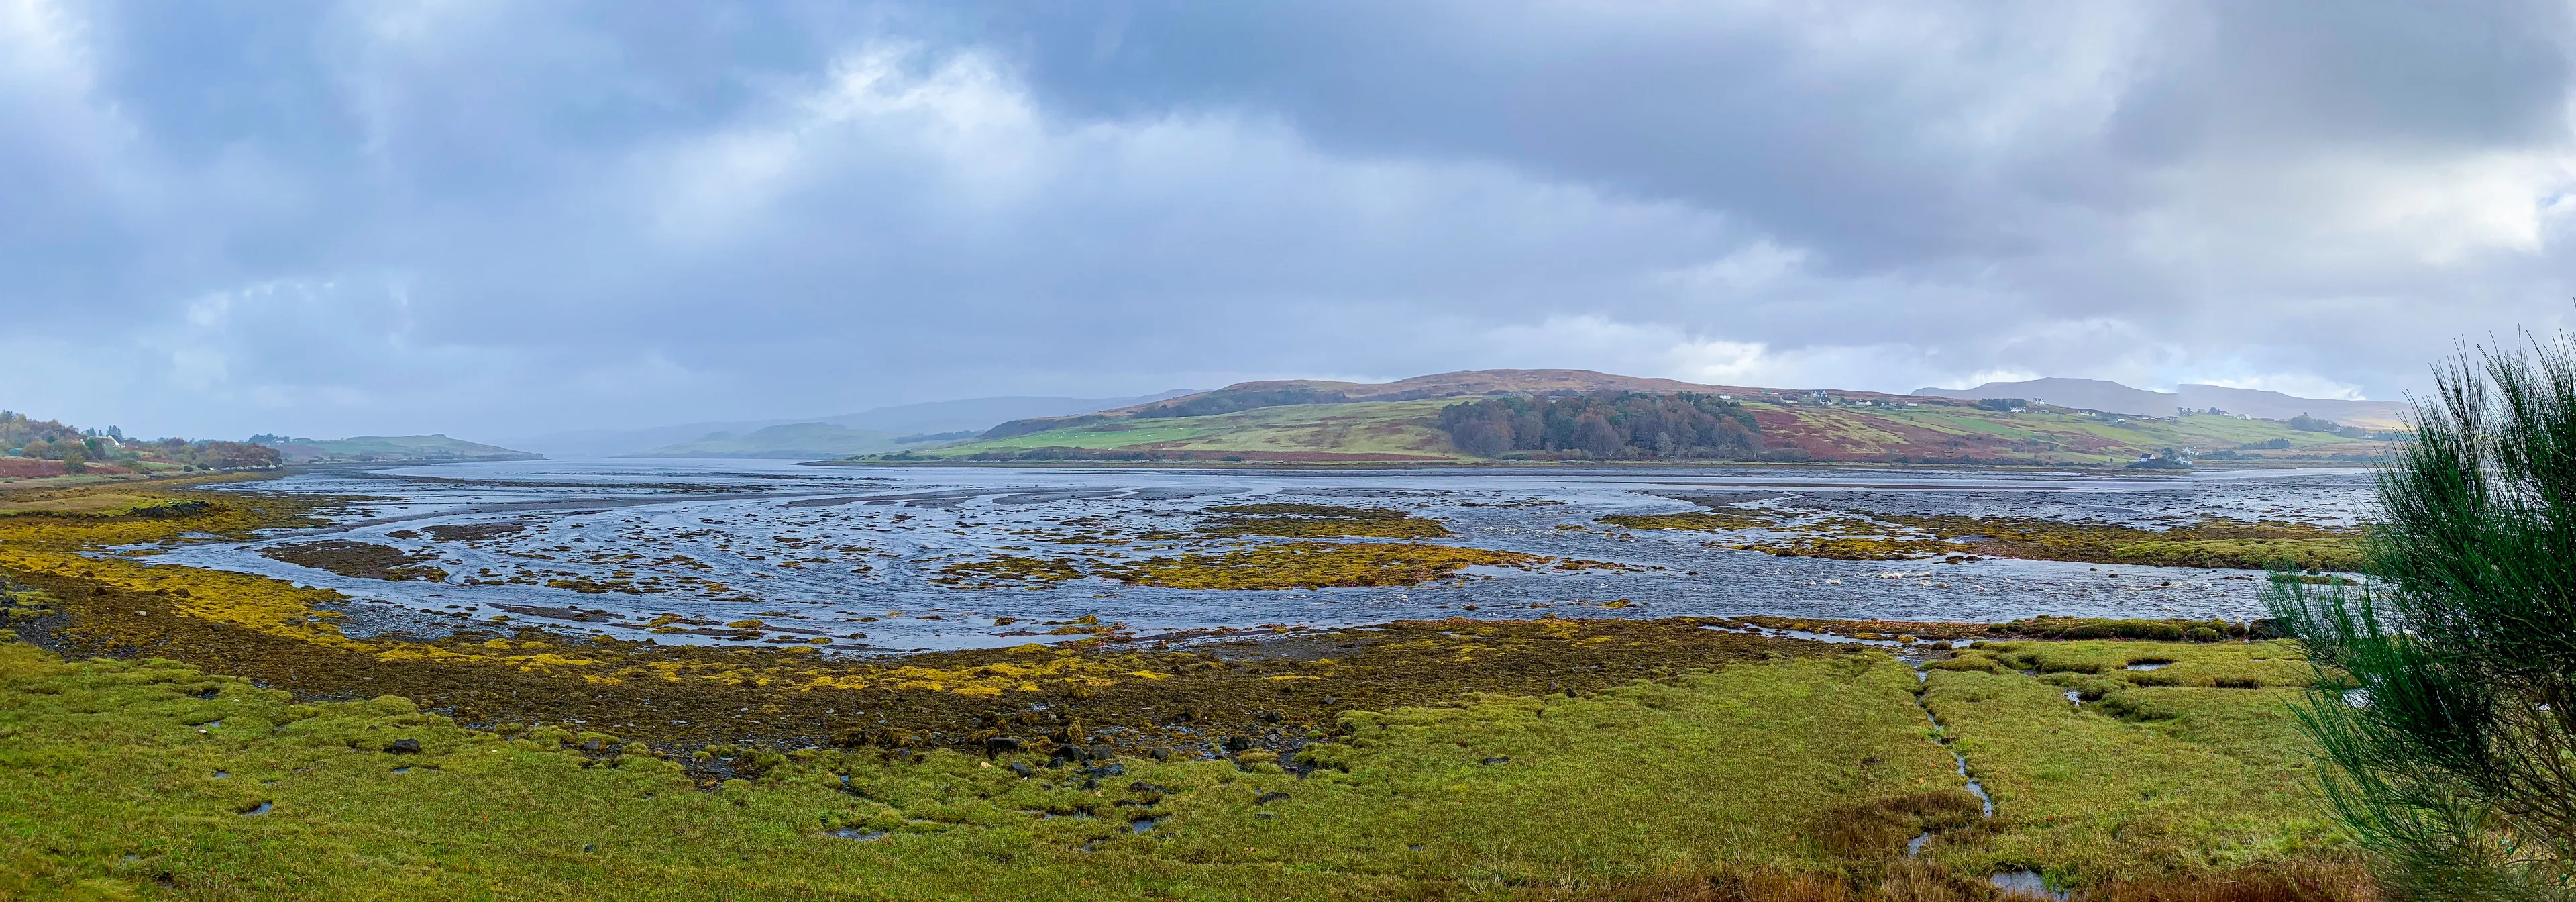 Another panoramia shot somewhere in the Duirinish peninsula, Isle of Skye, Scotland, UK